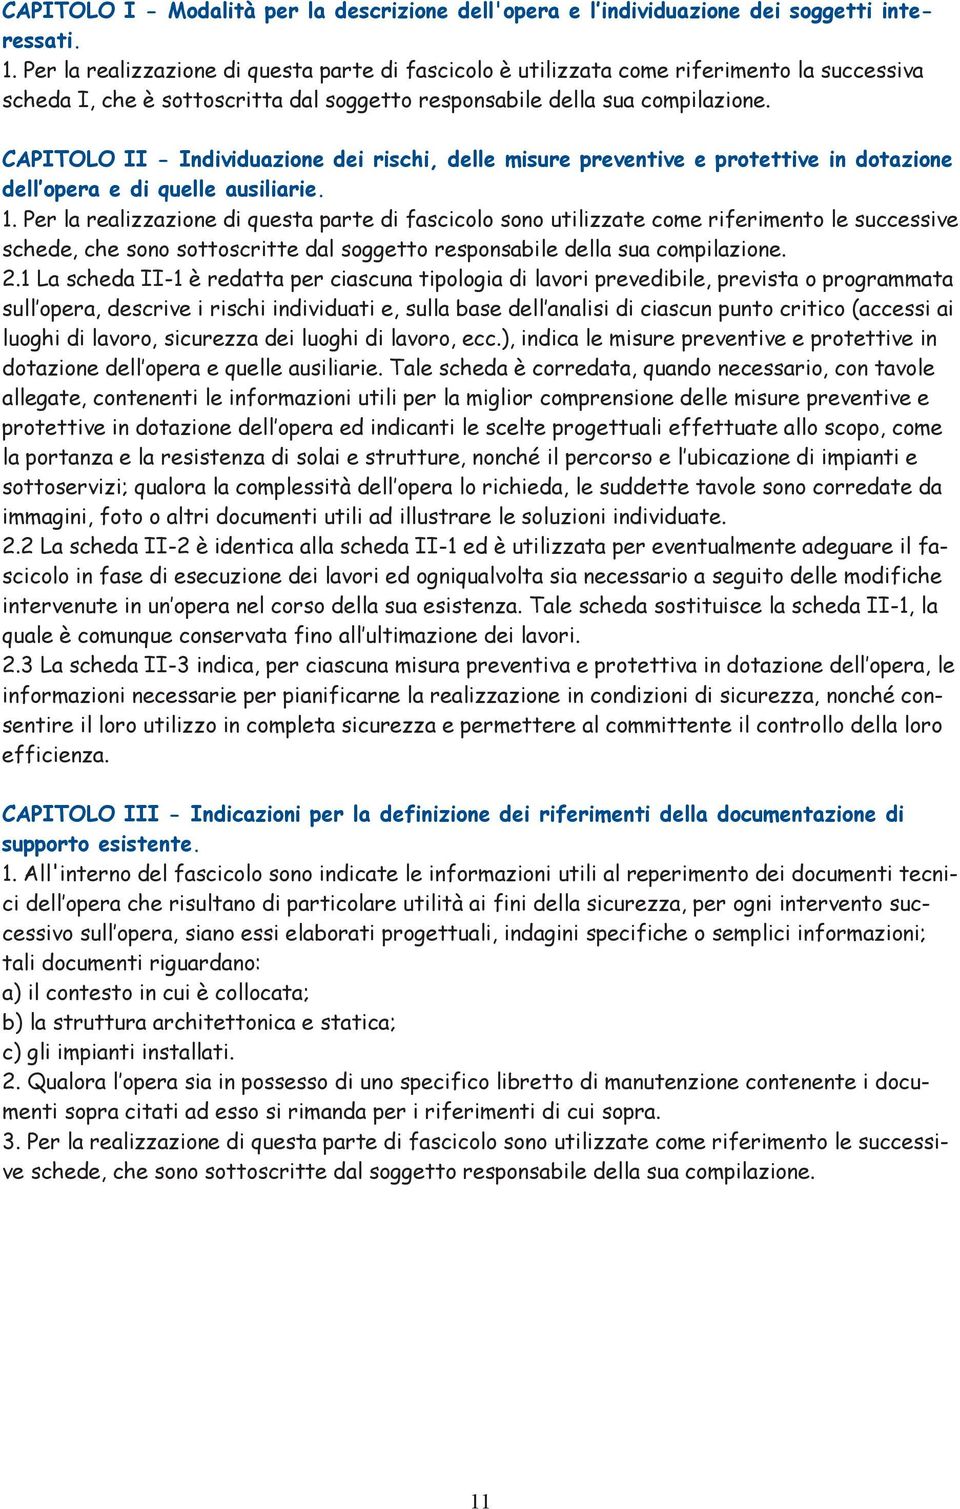 CAPITOLO II - Individuazione dei rischi, delle misure preventive e protettive in dotazione dell opera e di quelle ausiliarie. 1.